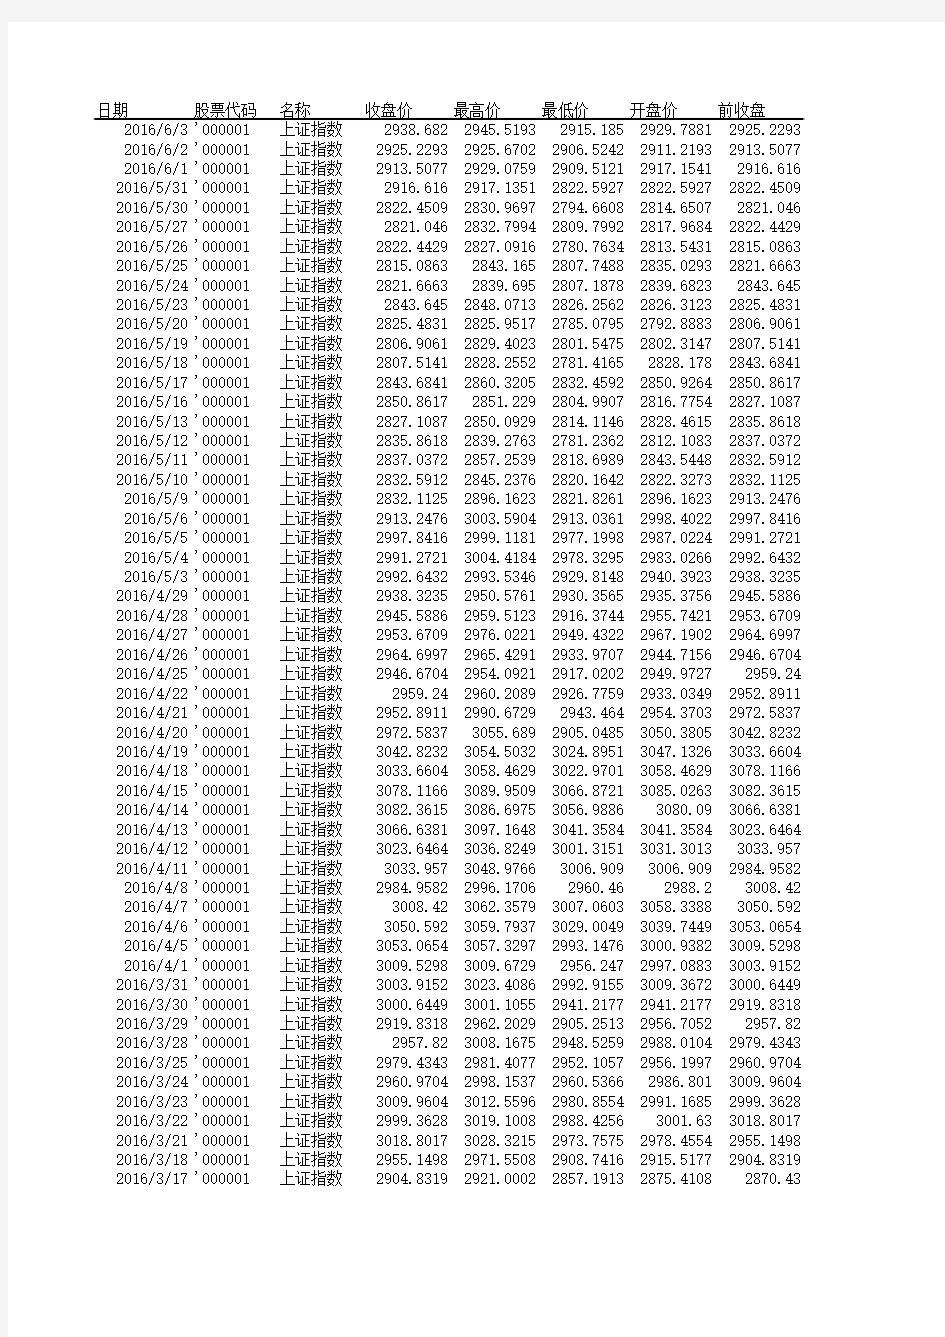 上证指数历史行情每日数据(1990年至2016年3月)